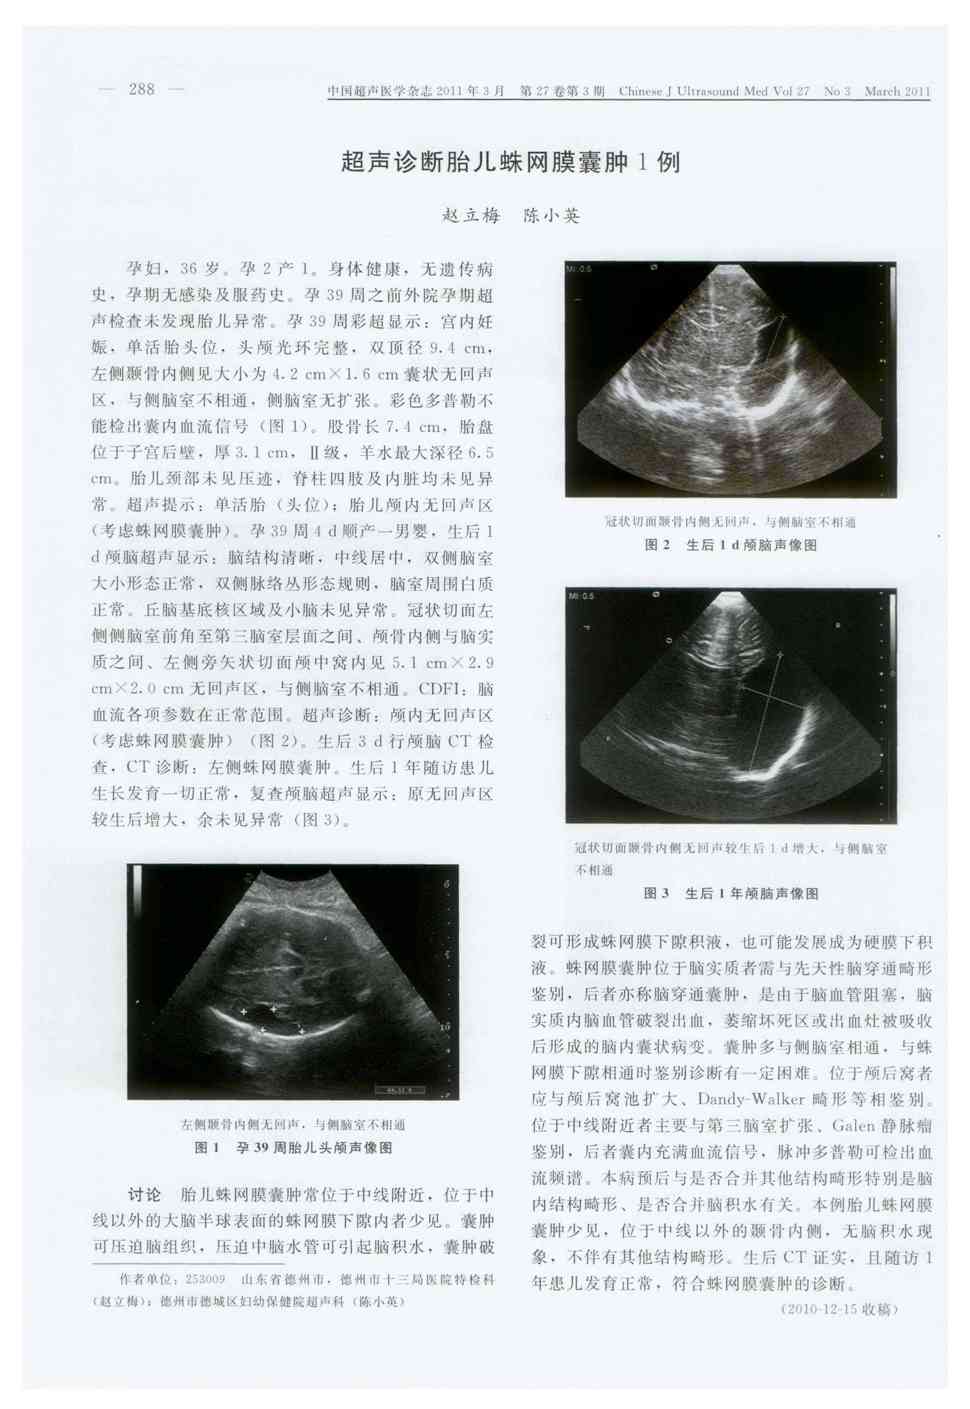 期刊超声诊断胎儿蛛网膜囊肿1例被引量:1